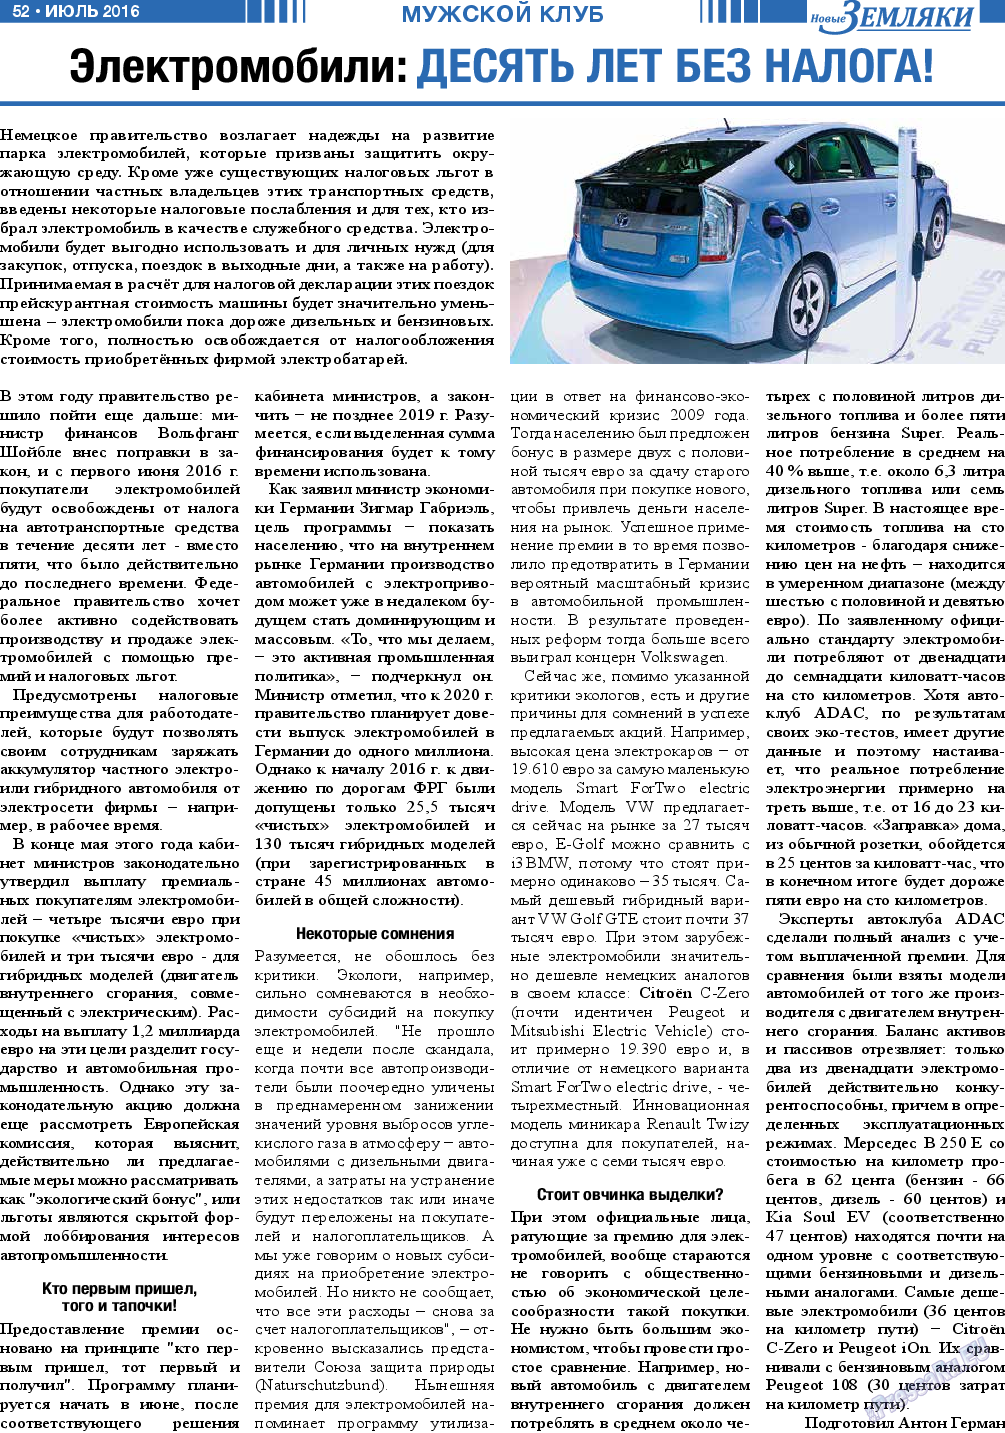 Новые Земляки, газета. 2016 №7 стр.52